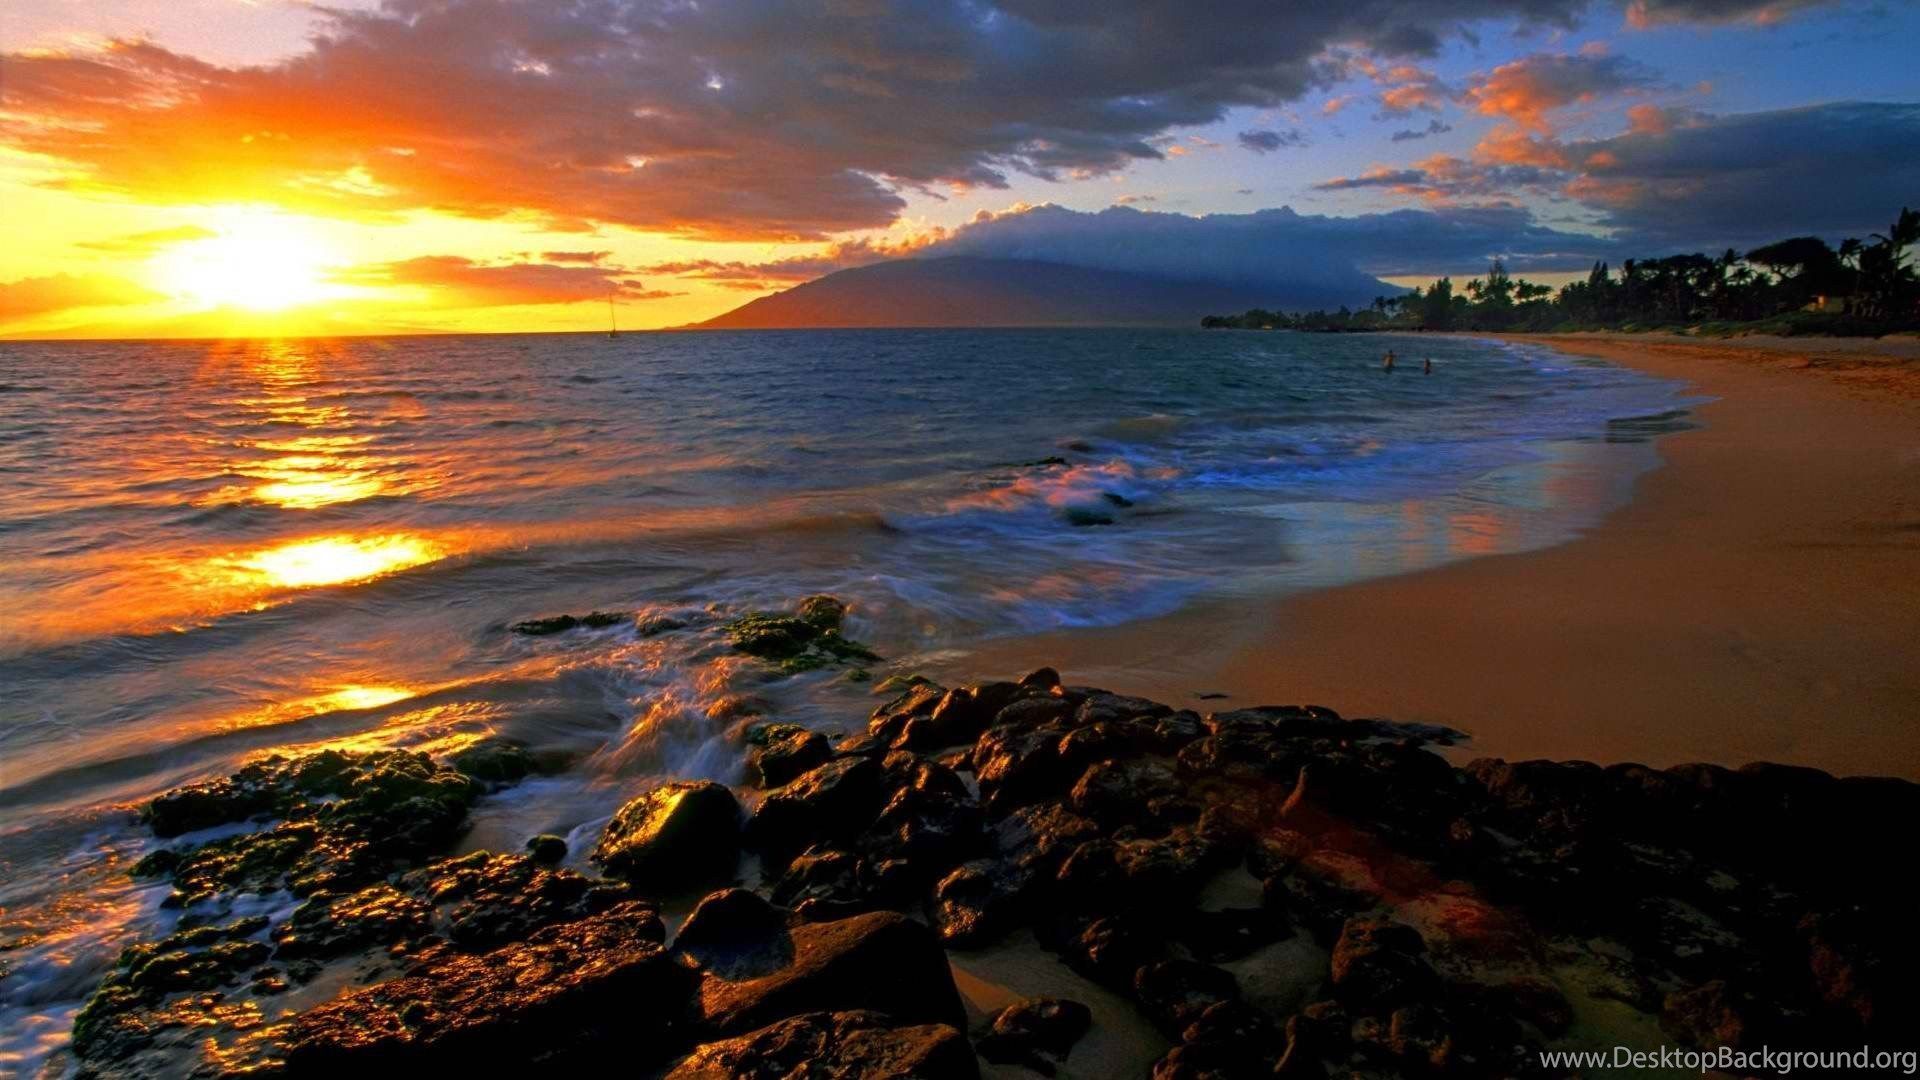 Maui Sunset Wallpaper Free Maui Sunset Background